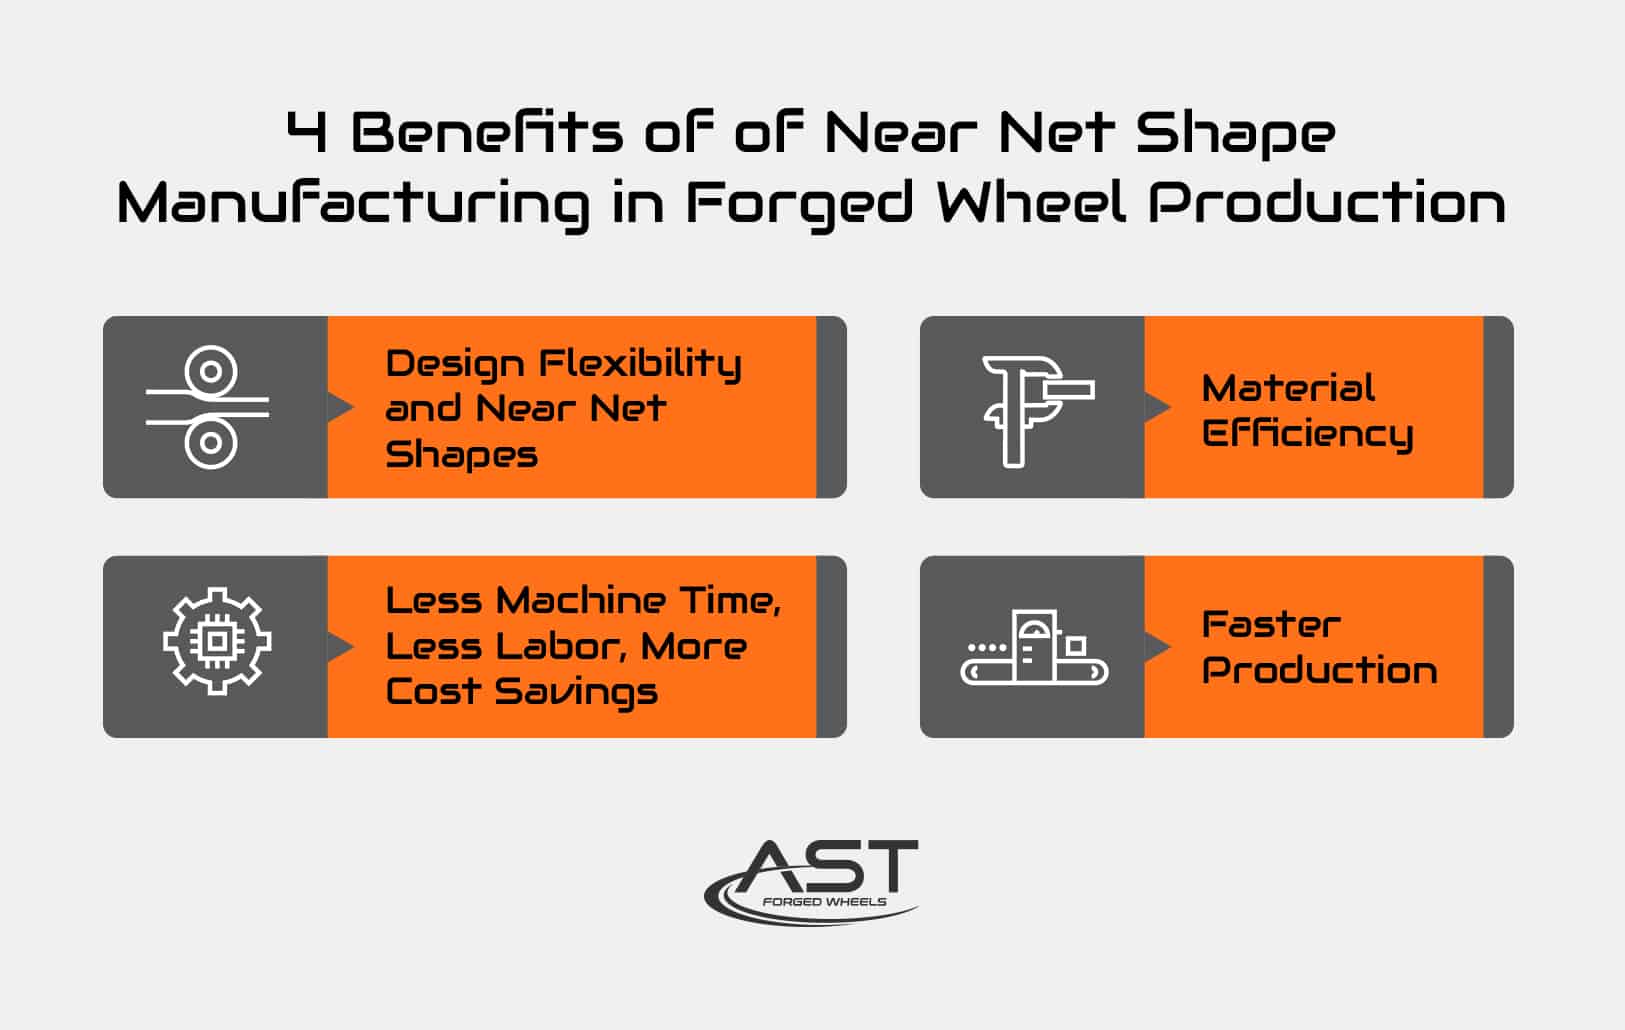 benefits of near net shape wheels